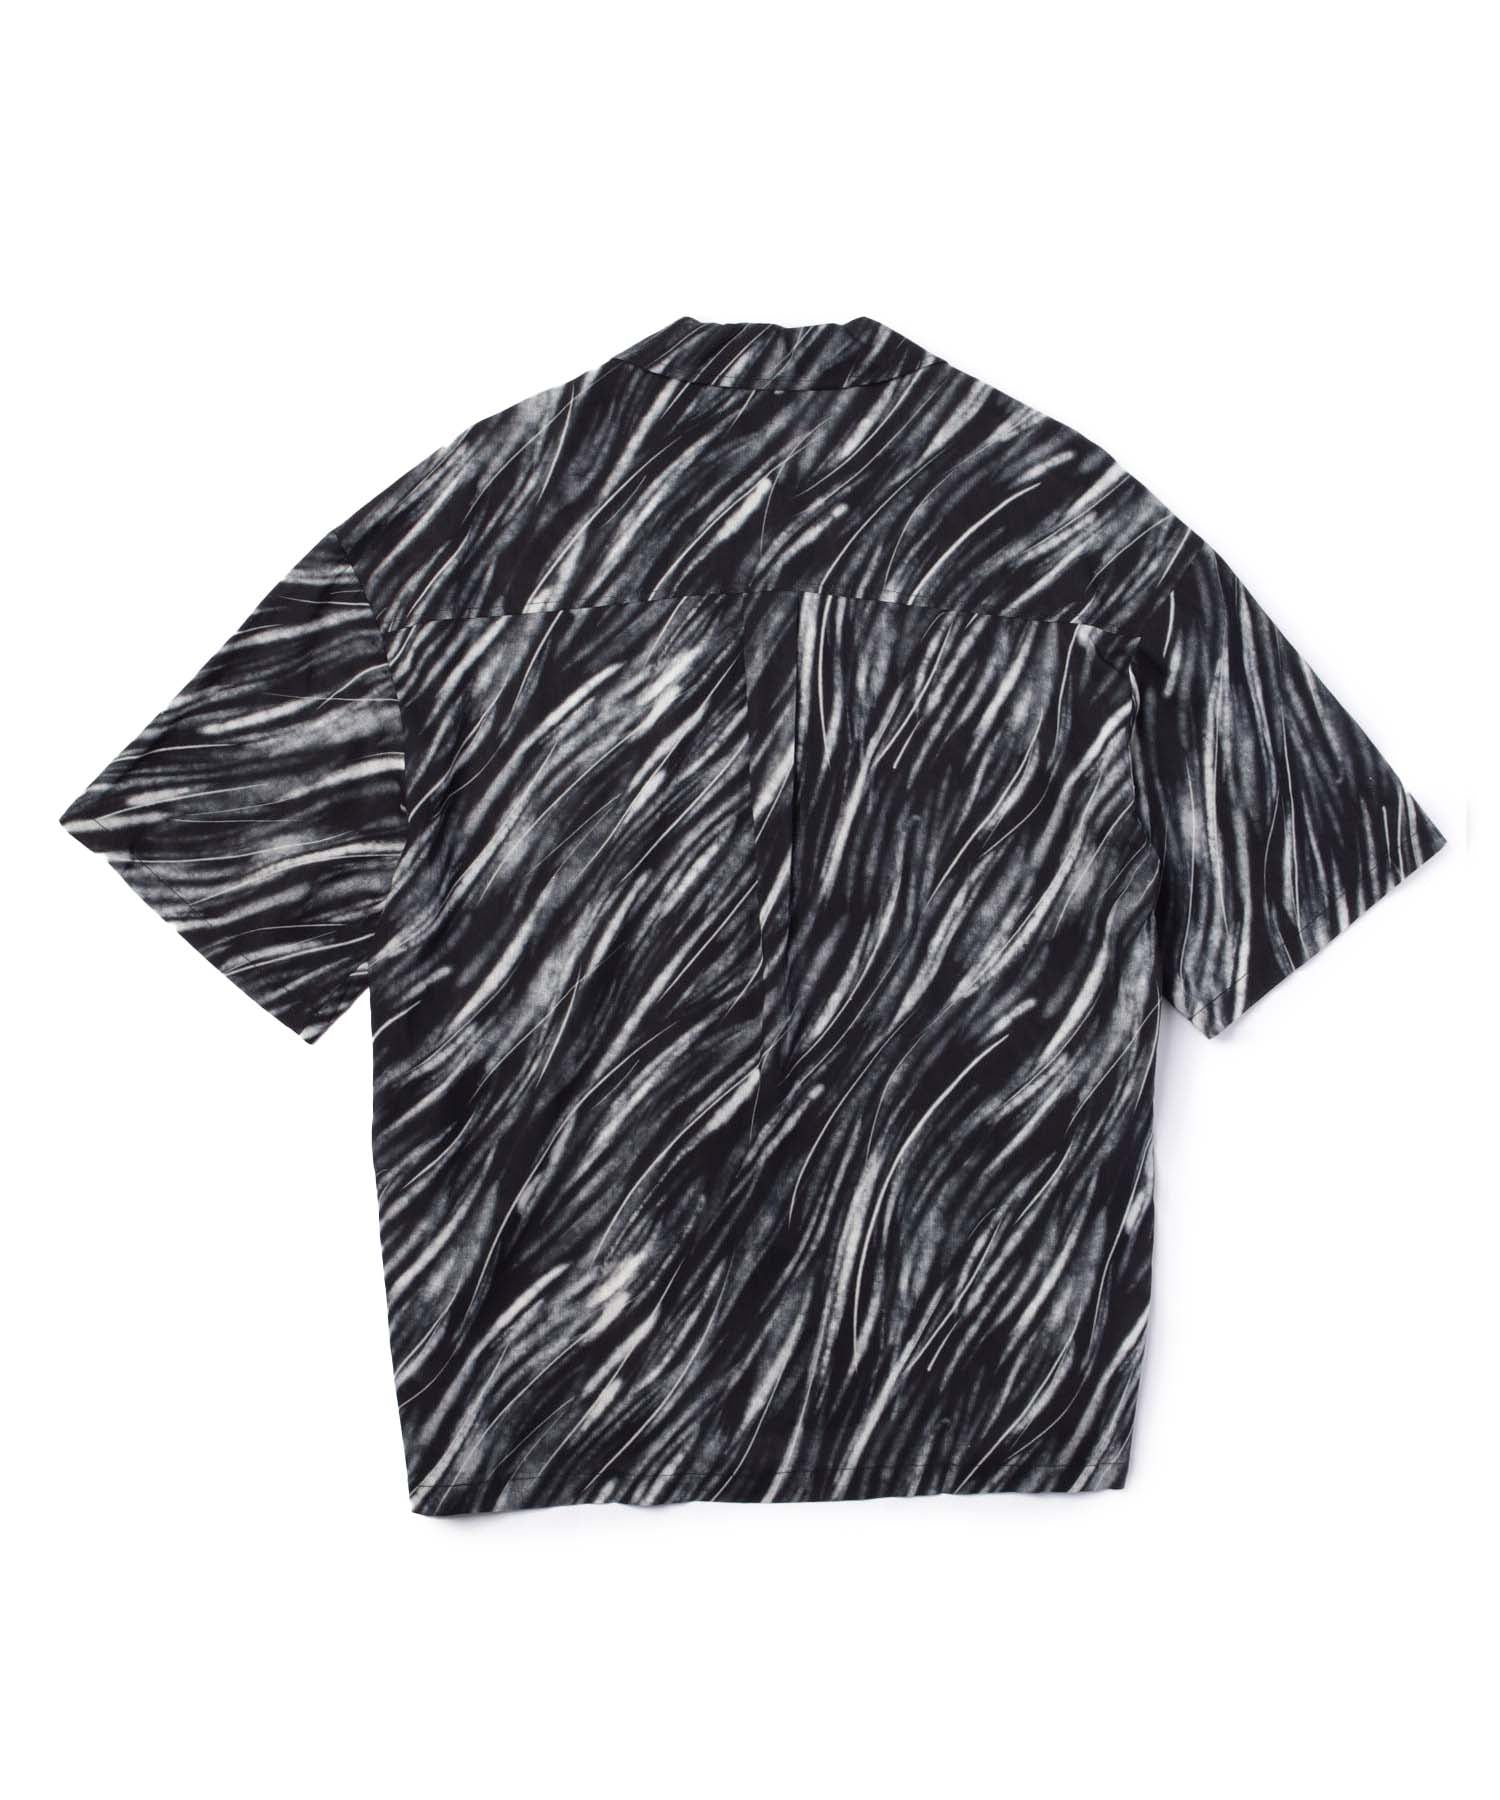 パターンオープンカラーシャツ[Black]